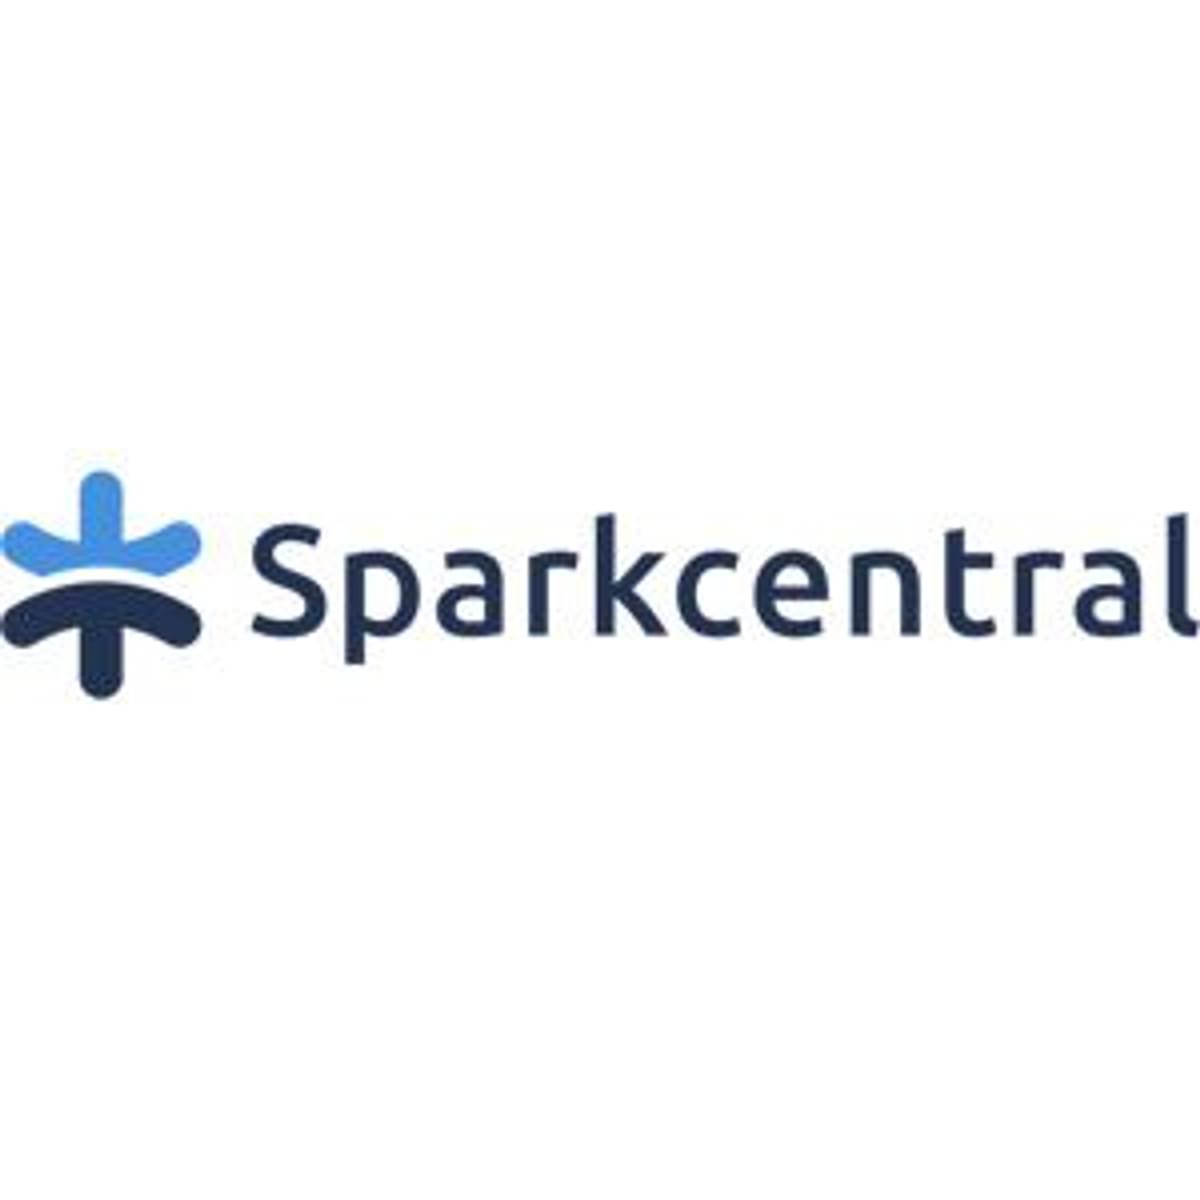 Sparkcentral krijgt kapitaalinjectie van 20 miljoen dollar image